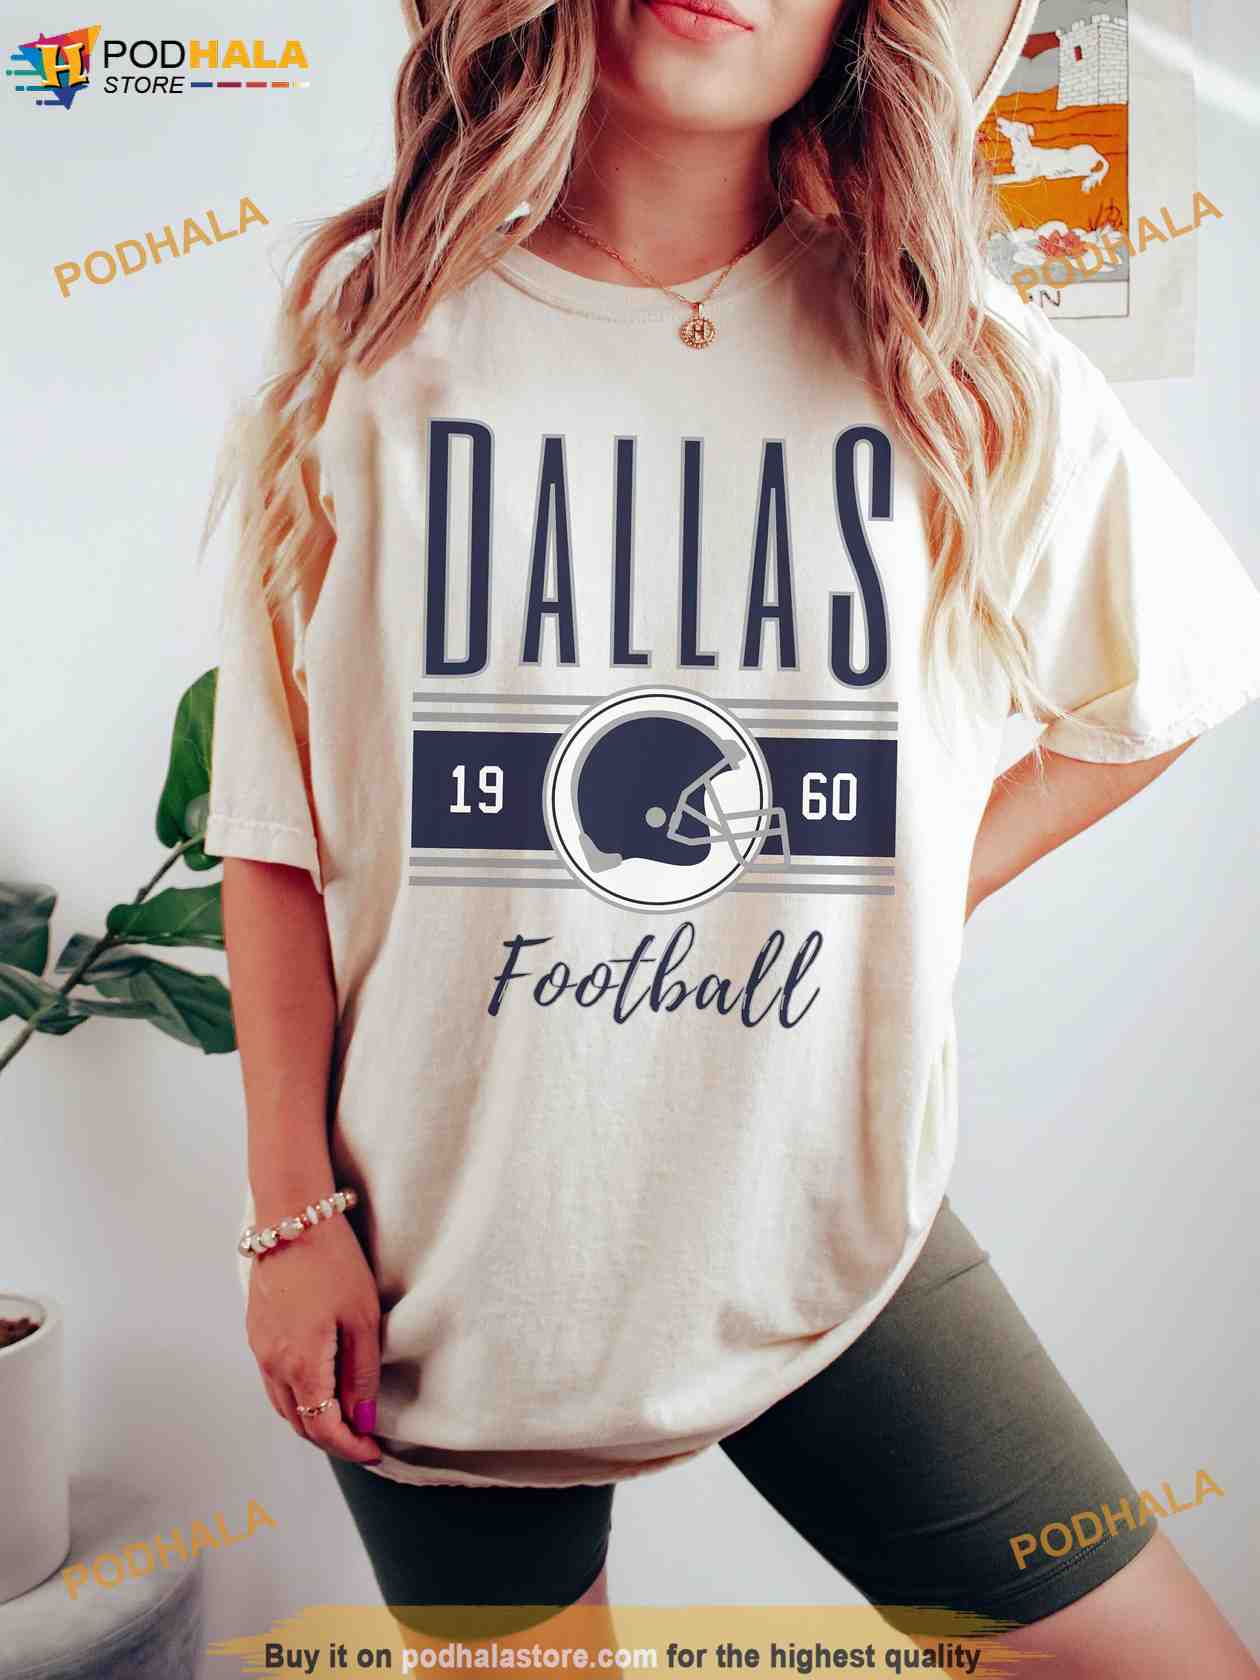 Women NFL Fan Jerseys for sale